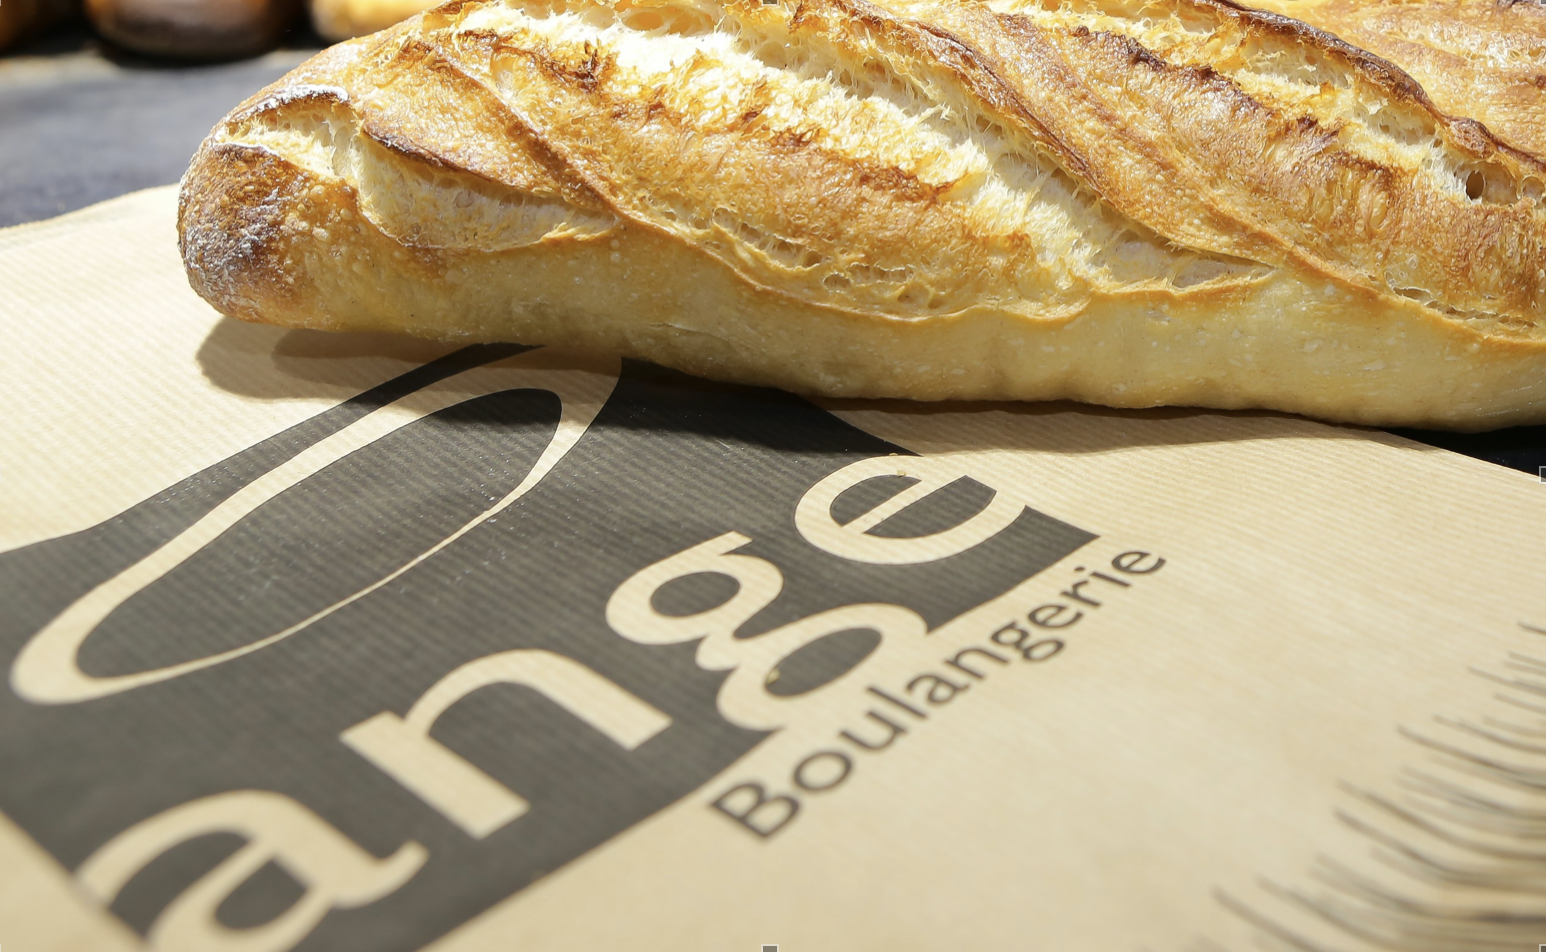 Une boulangerie Ange emploie en moyenne 12 salariés et table sur un chiffre d’affaires de 1,2 million d’euros HT par an.